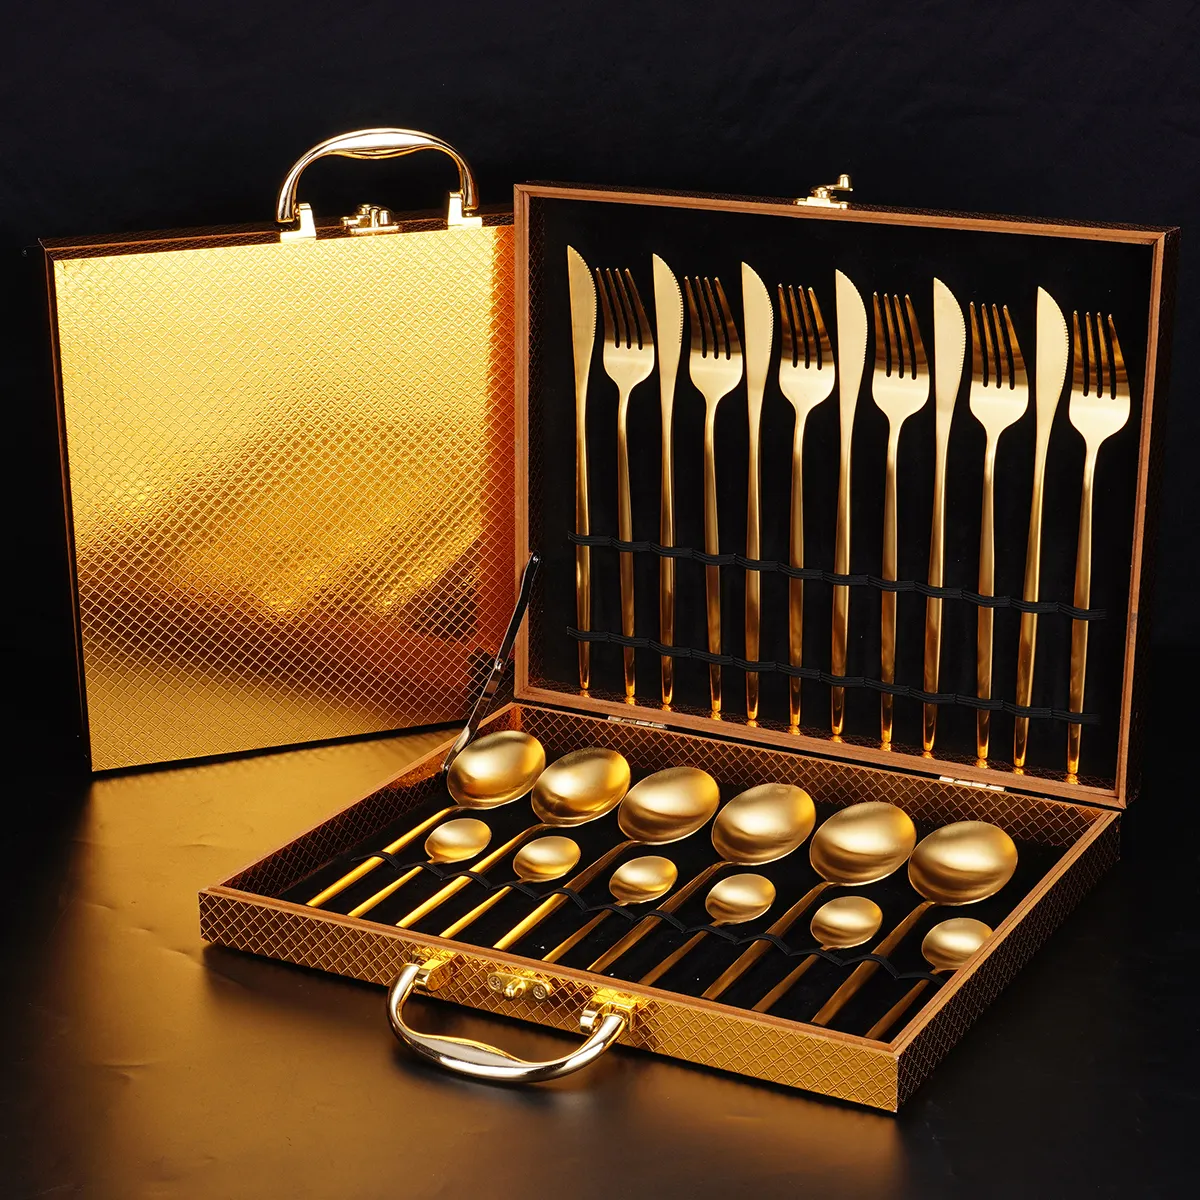 Luxus Portugal Stil Edelstahl Besteck Set Spiegel Polnisch Besteck Löffel Gabel Messer 24 Stück Gold Besteck Set